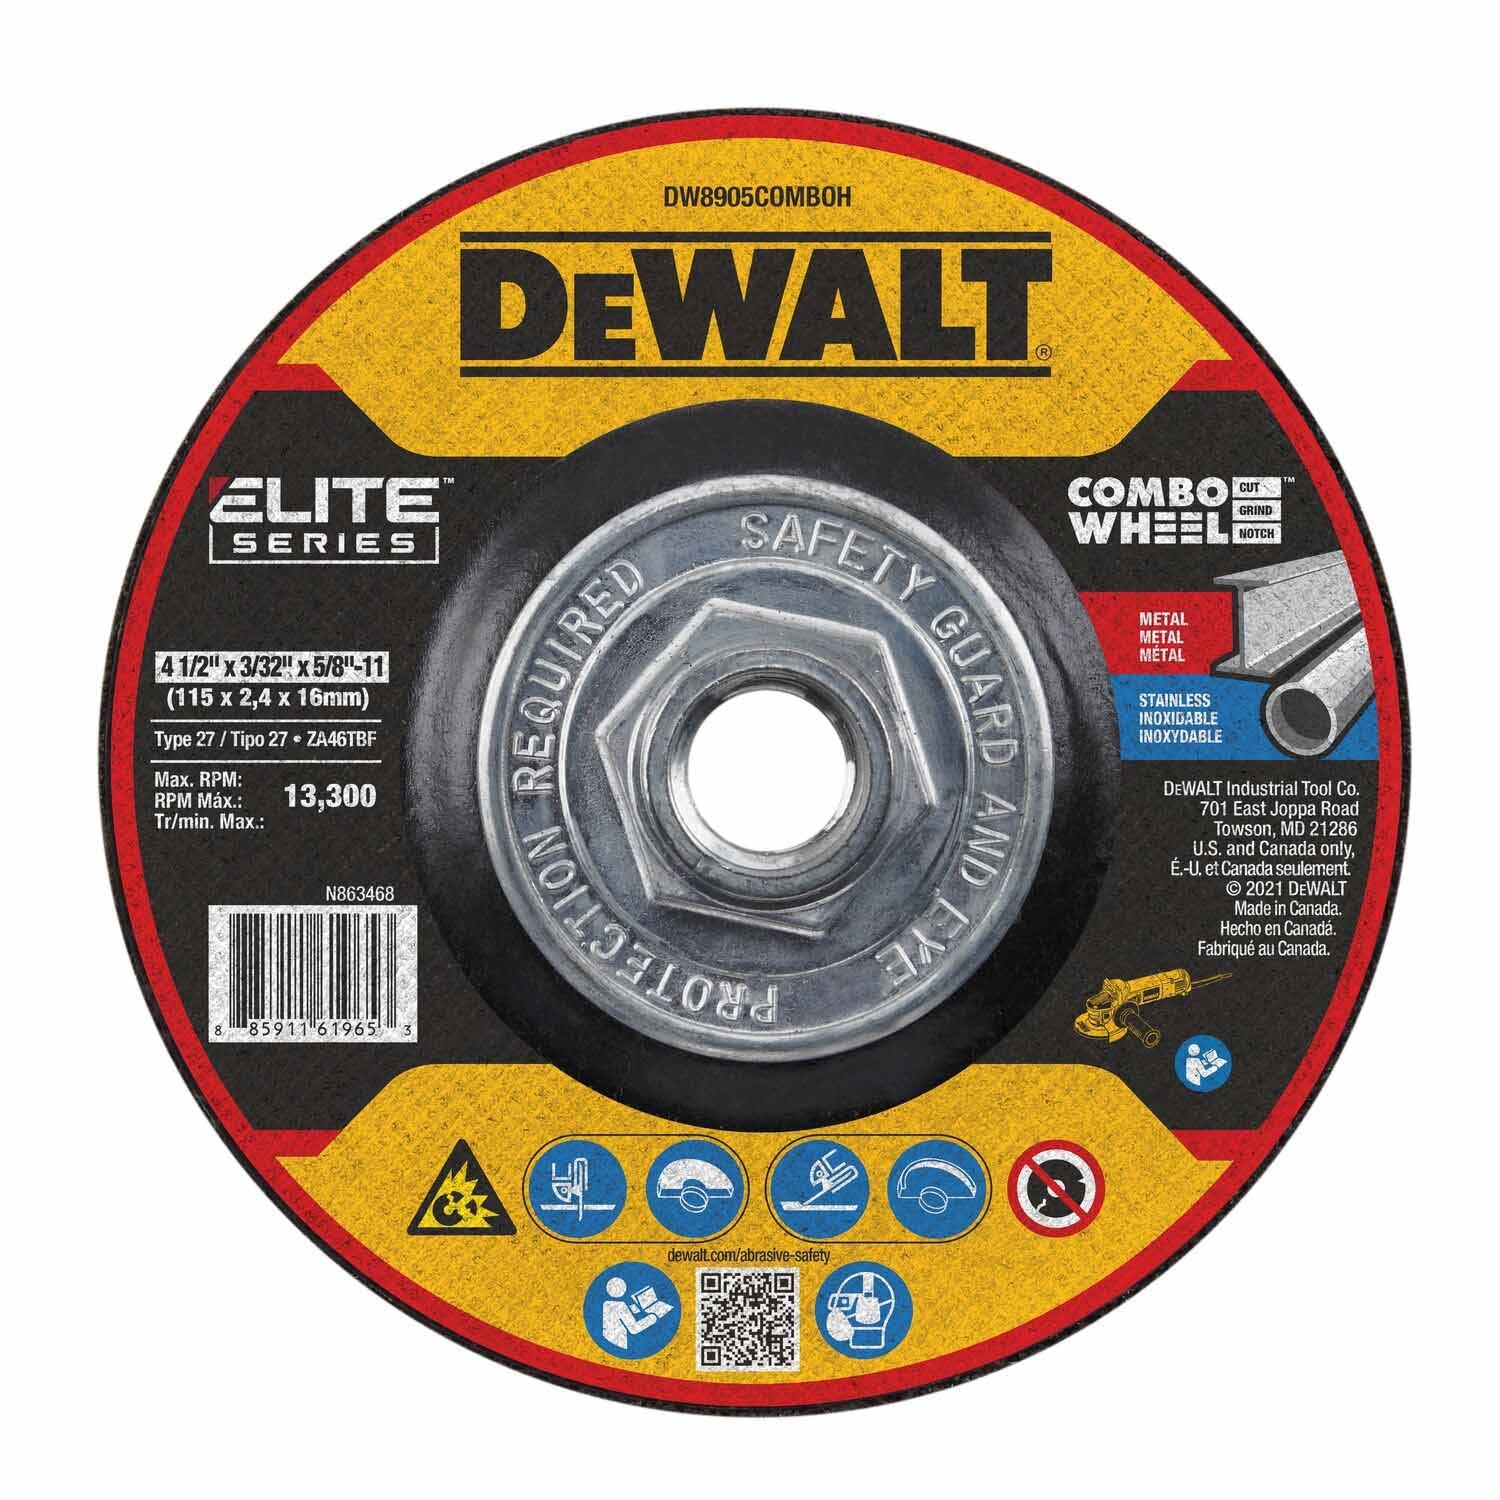 DeWalt DW8905COMBOH Elite Series 4-1/2 x 3/32 x 5/8-11 XP T27 Cut & Notch